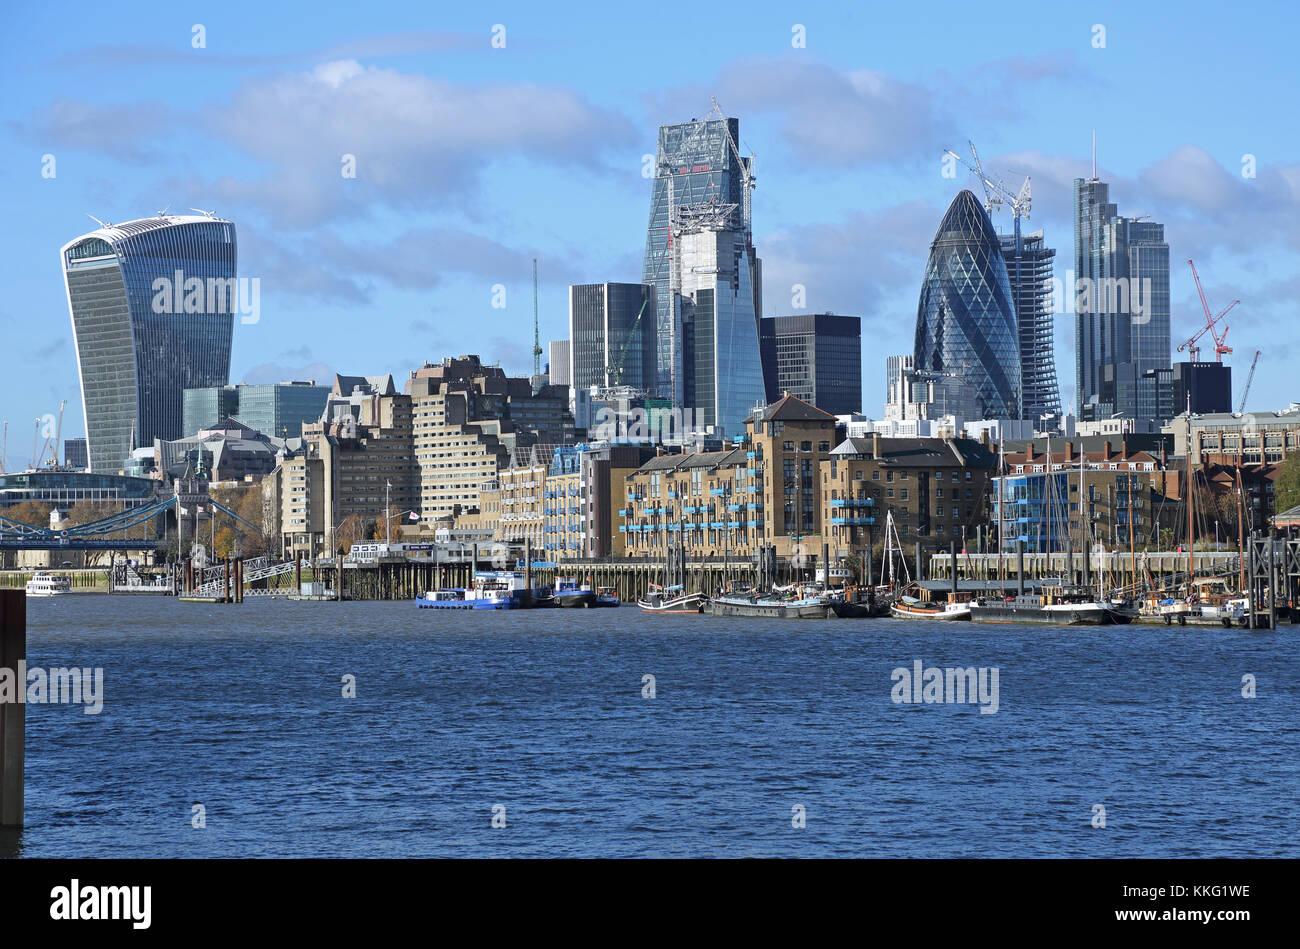 Il London skyline della città di contrasti con i magazzini e ormeggiata chiatte a vela sul lungomare a Wapping. Vista da Bermondsey. Regno Unito Foto Stock